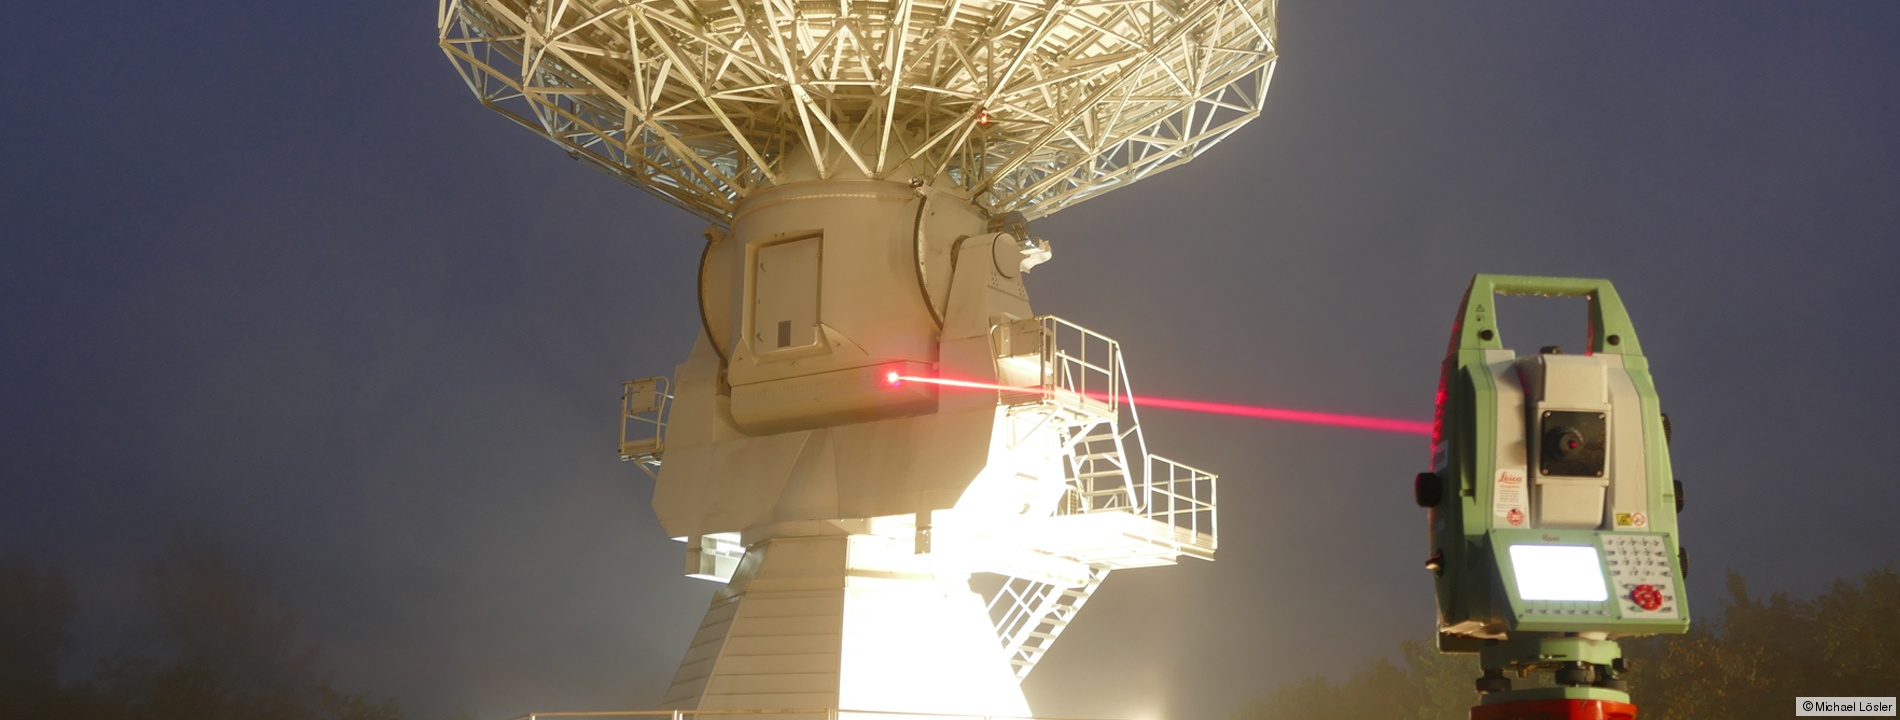 Referenzpunktbestimmung am TWIN Radioteleskop Wettzell mit Lasermesstechnik